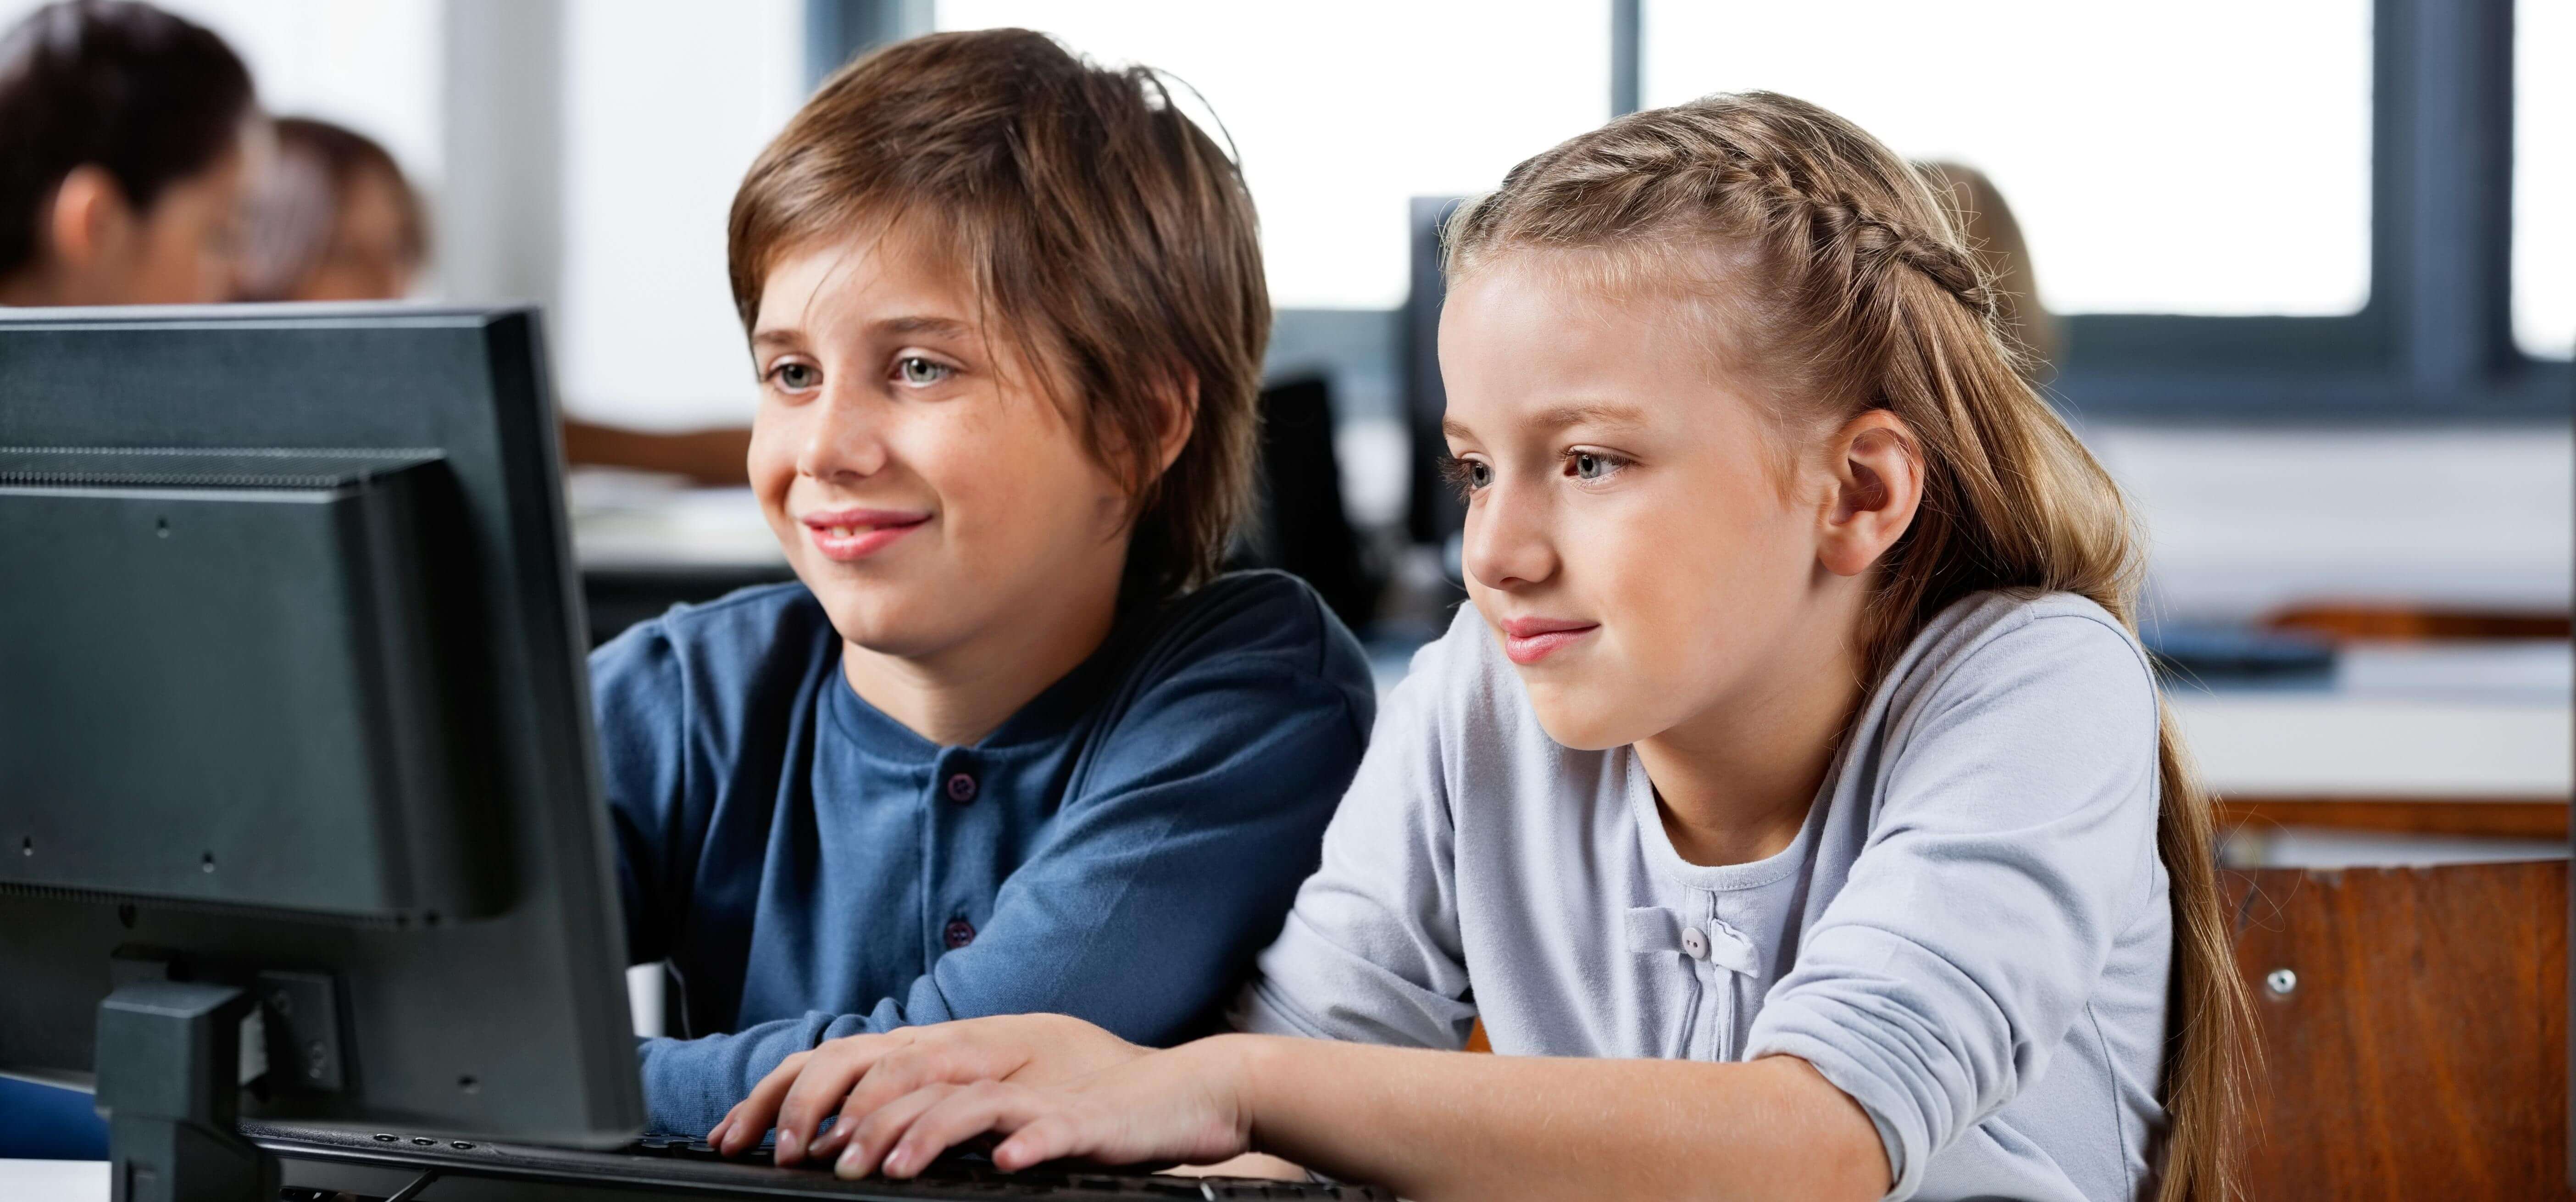 Компьютер для детей обучение. Компьютер для детей. Ученик за компьютером. Компьютер для школьника. Подросток за компьютером.